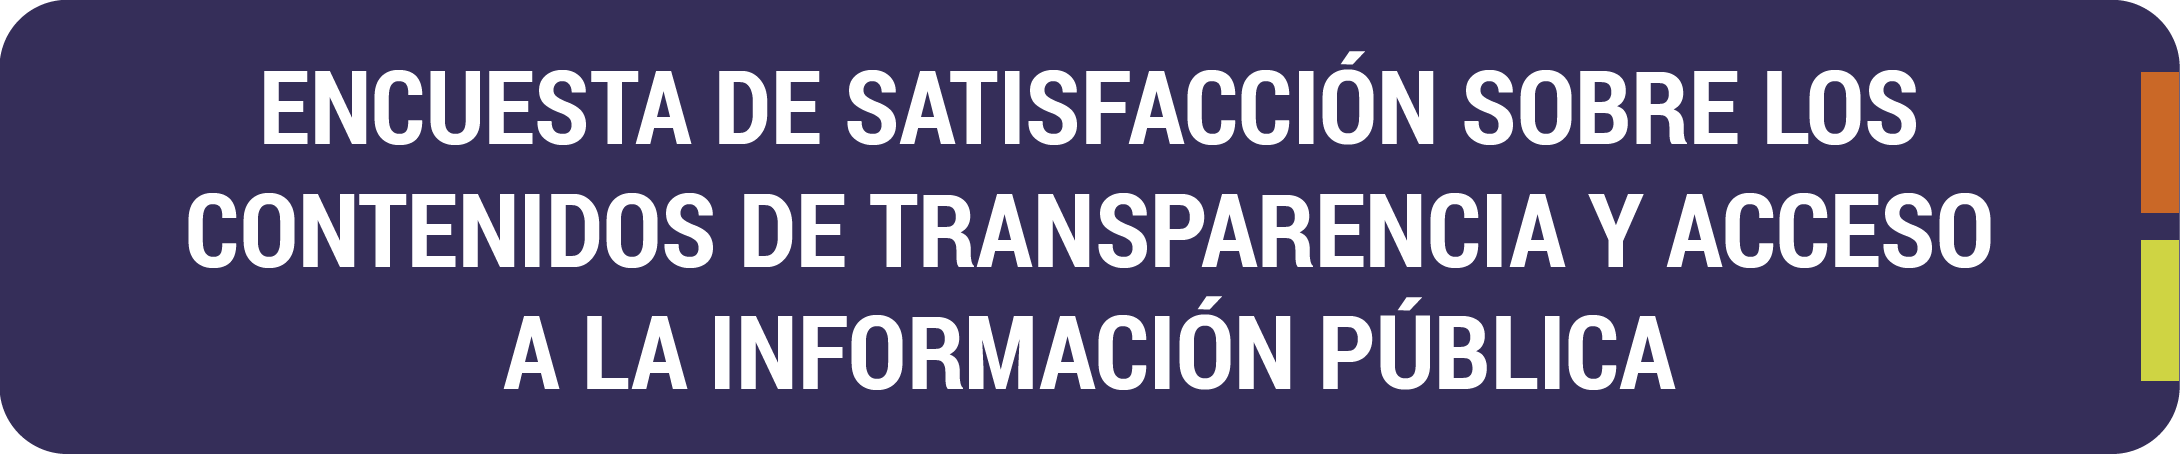 Botón encuesta de satisfacción sobre los contenidos de transparencia y acceso a la información pública